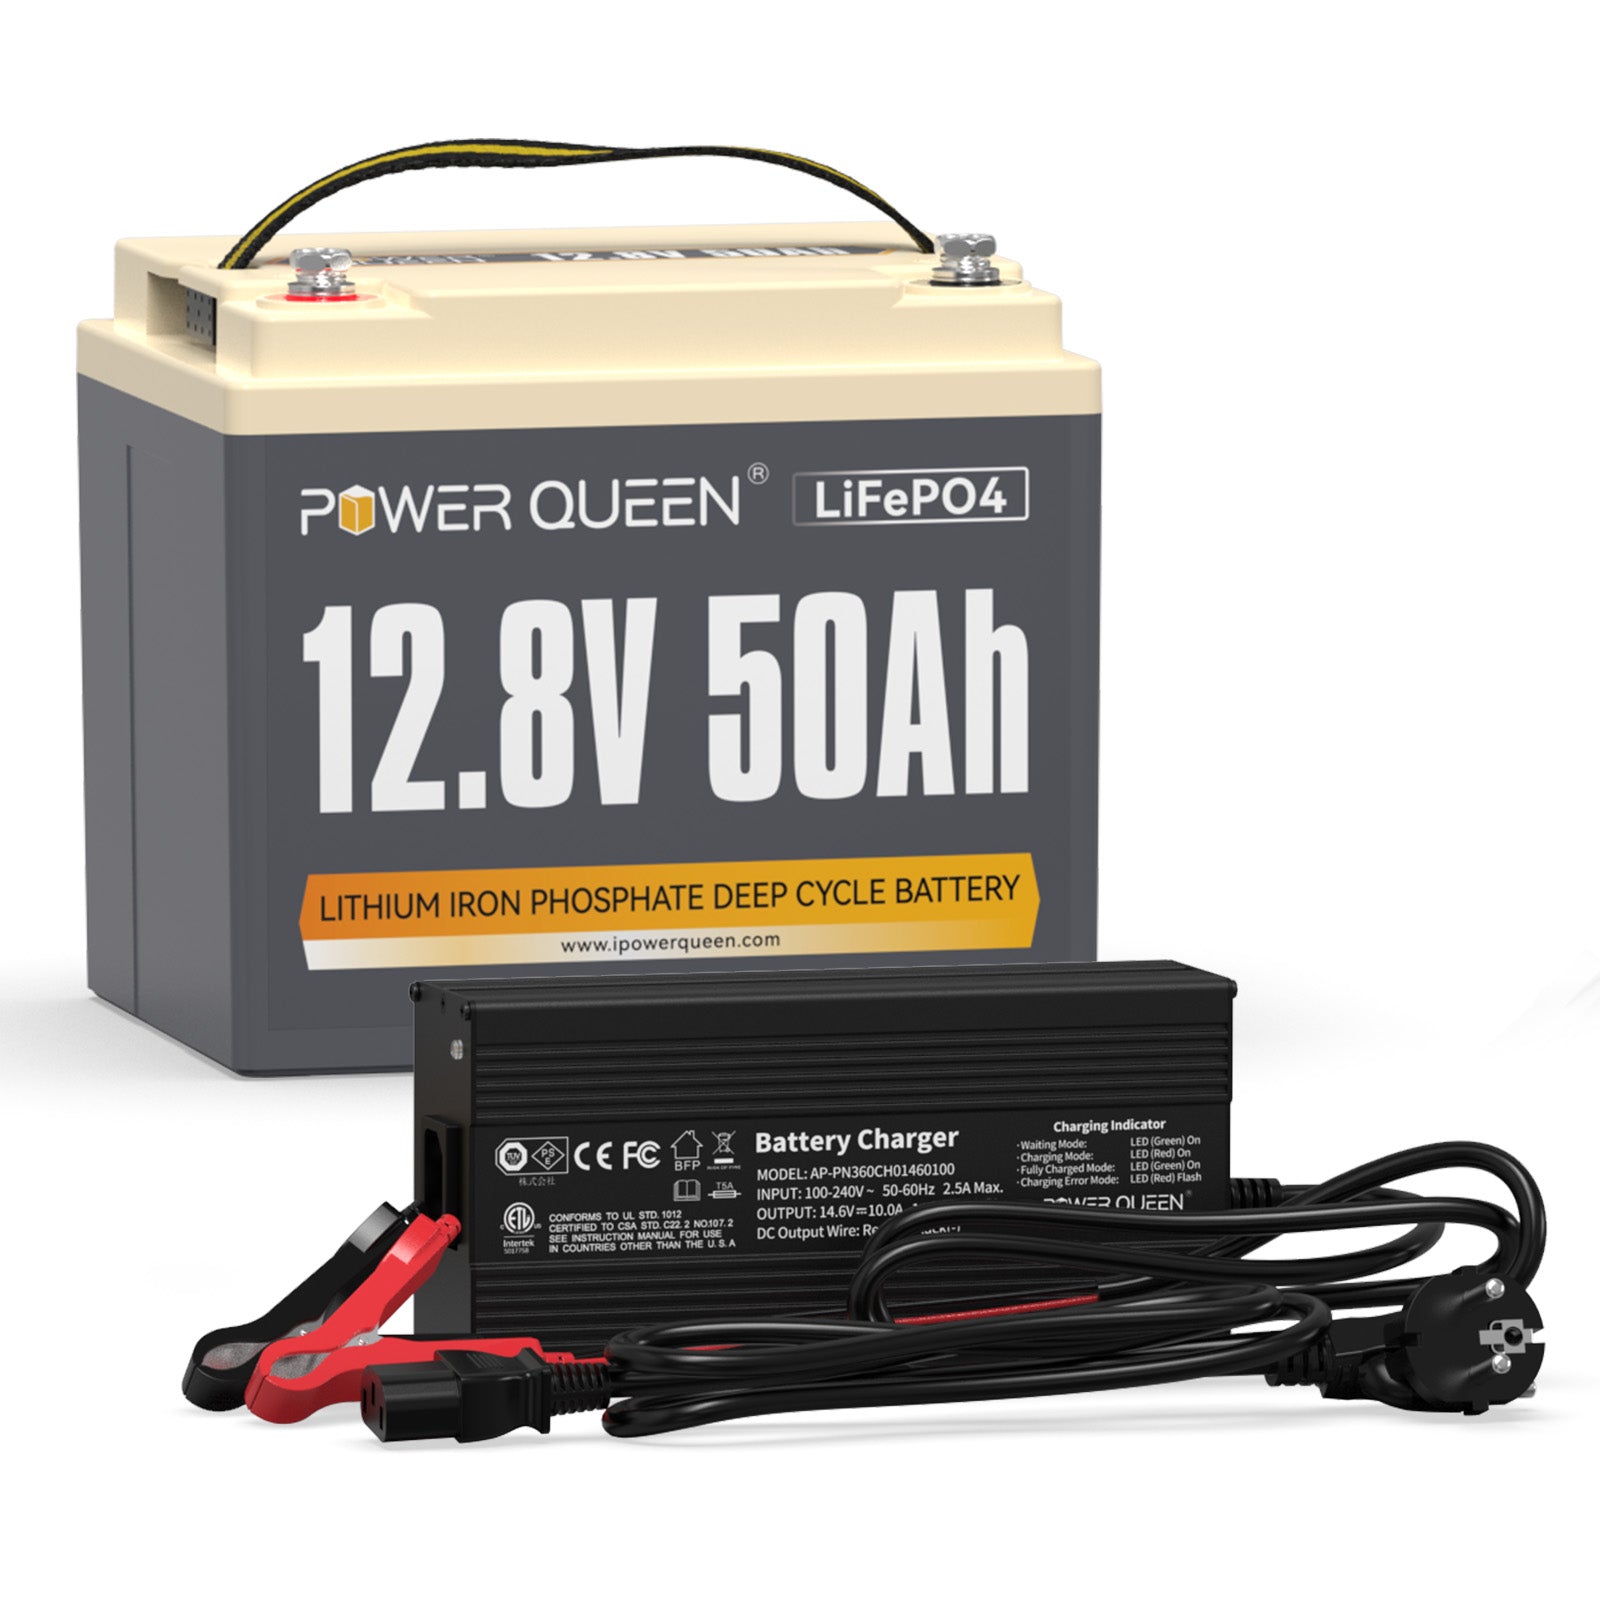 Batería Power Queen LiFePO4 de 12,8 V 50 Ah con cargador LiFePO4 de 14,6 V 10 A